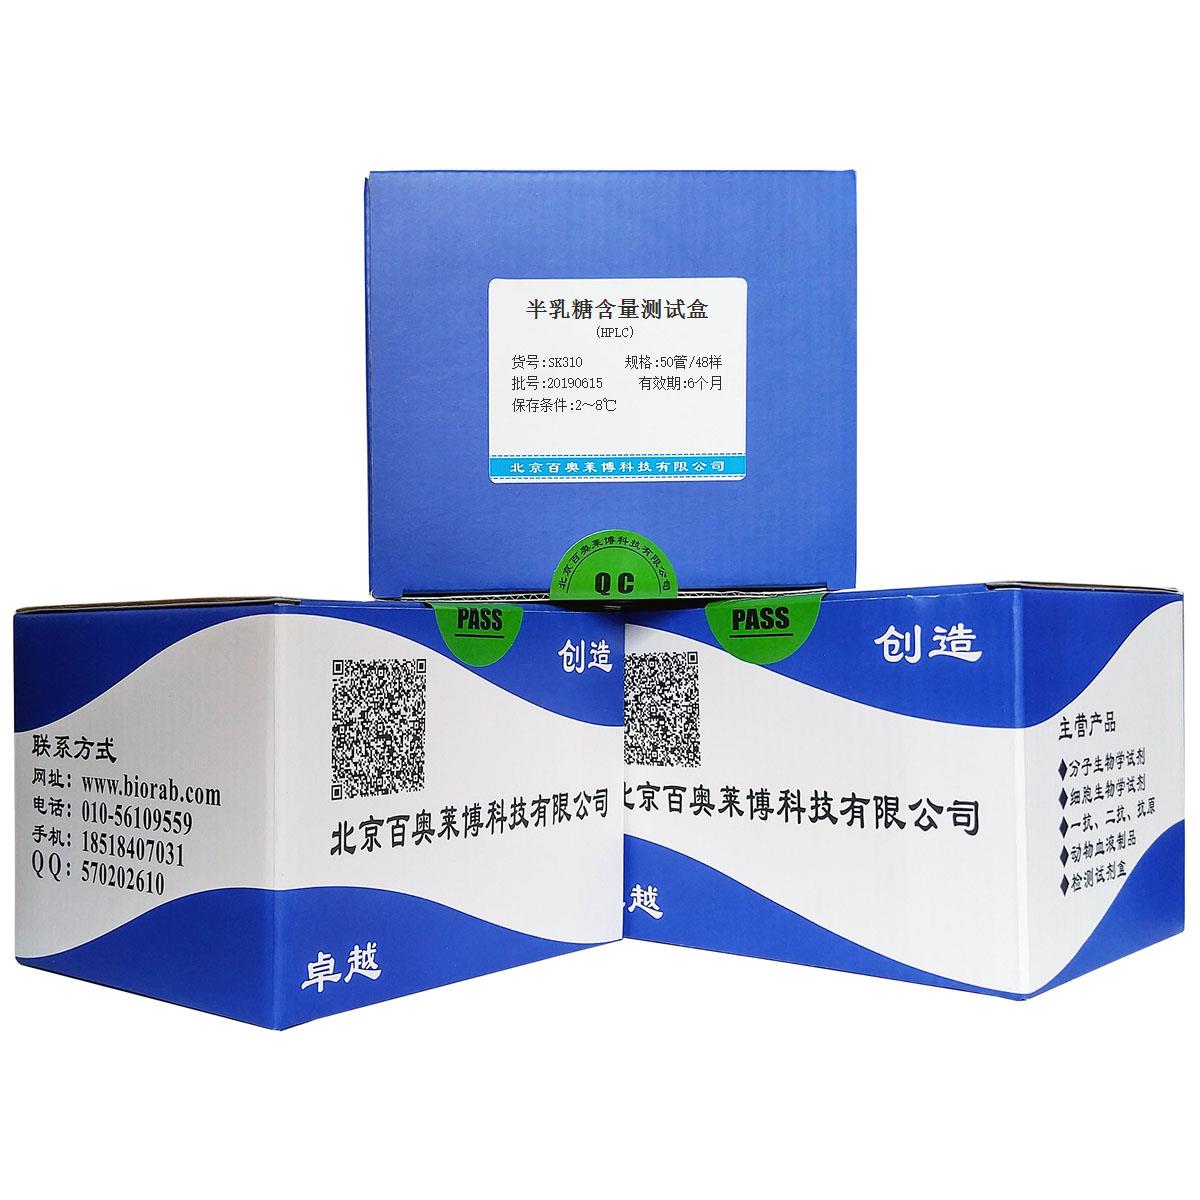 半乳糖含量测试盒(HPLC)北京品牌